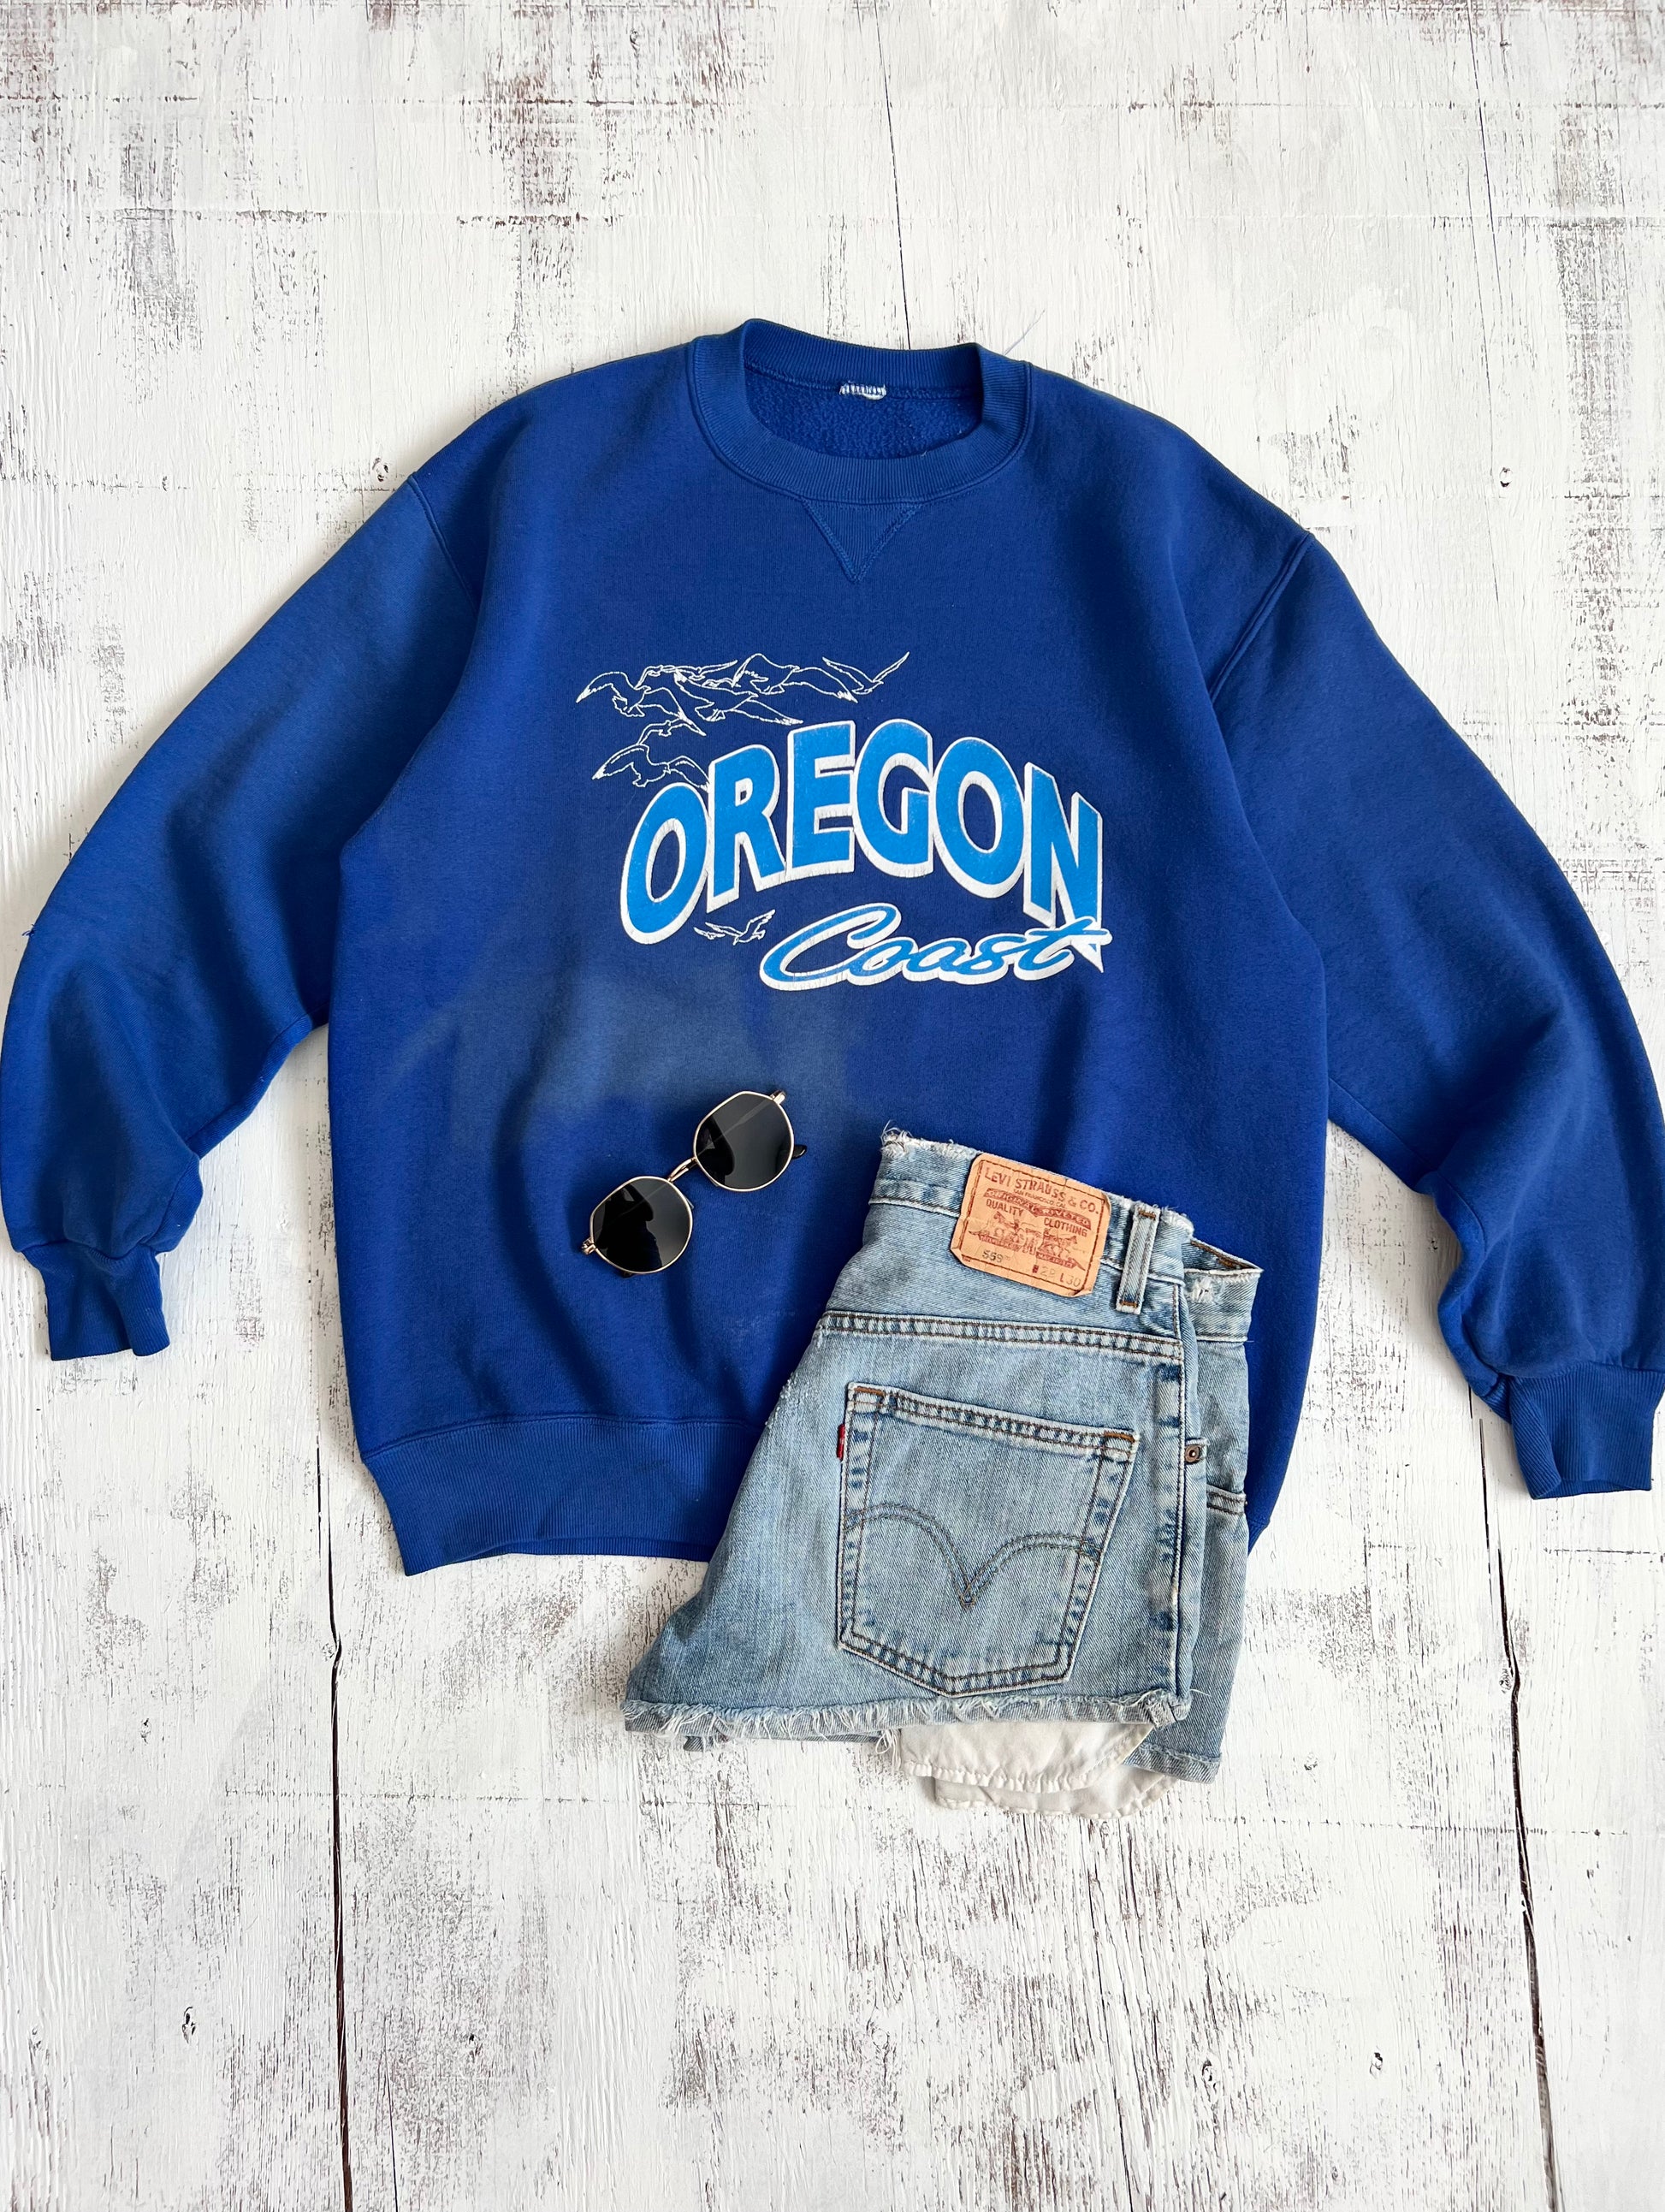 Oregon Coast Russell Athletics Crewneck Sweatshirt (L) – Homebody Vintage